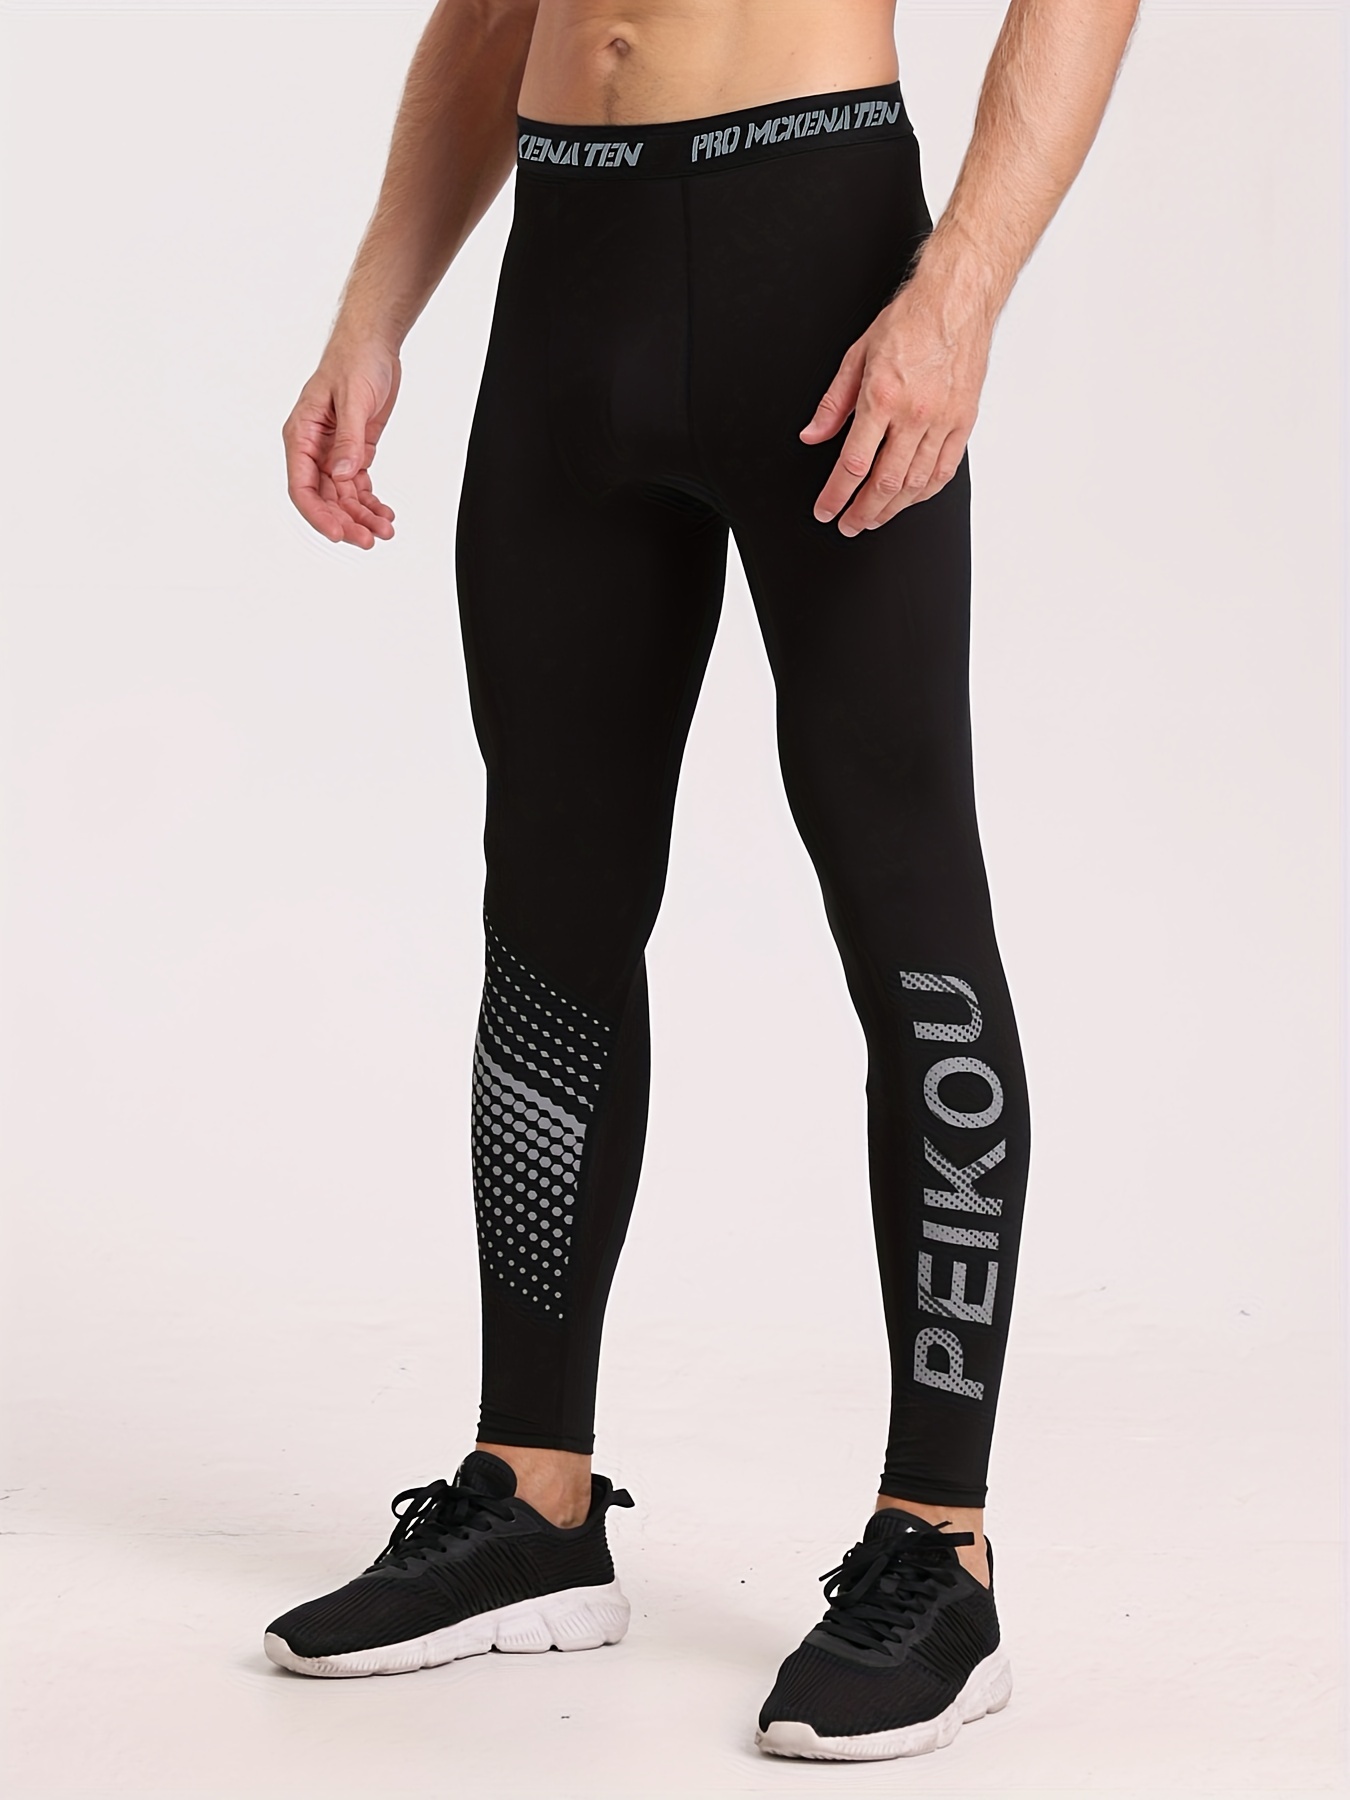 Flexel Men's Skinny Fit Color Block Leggings Sun Protection - Temu